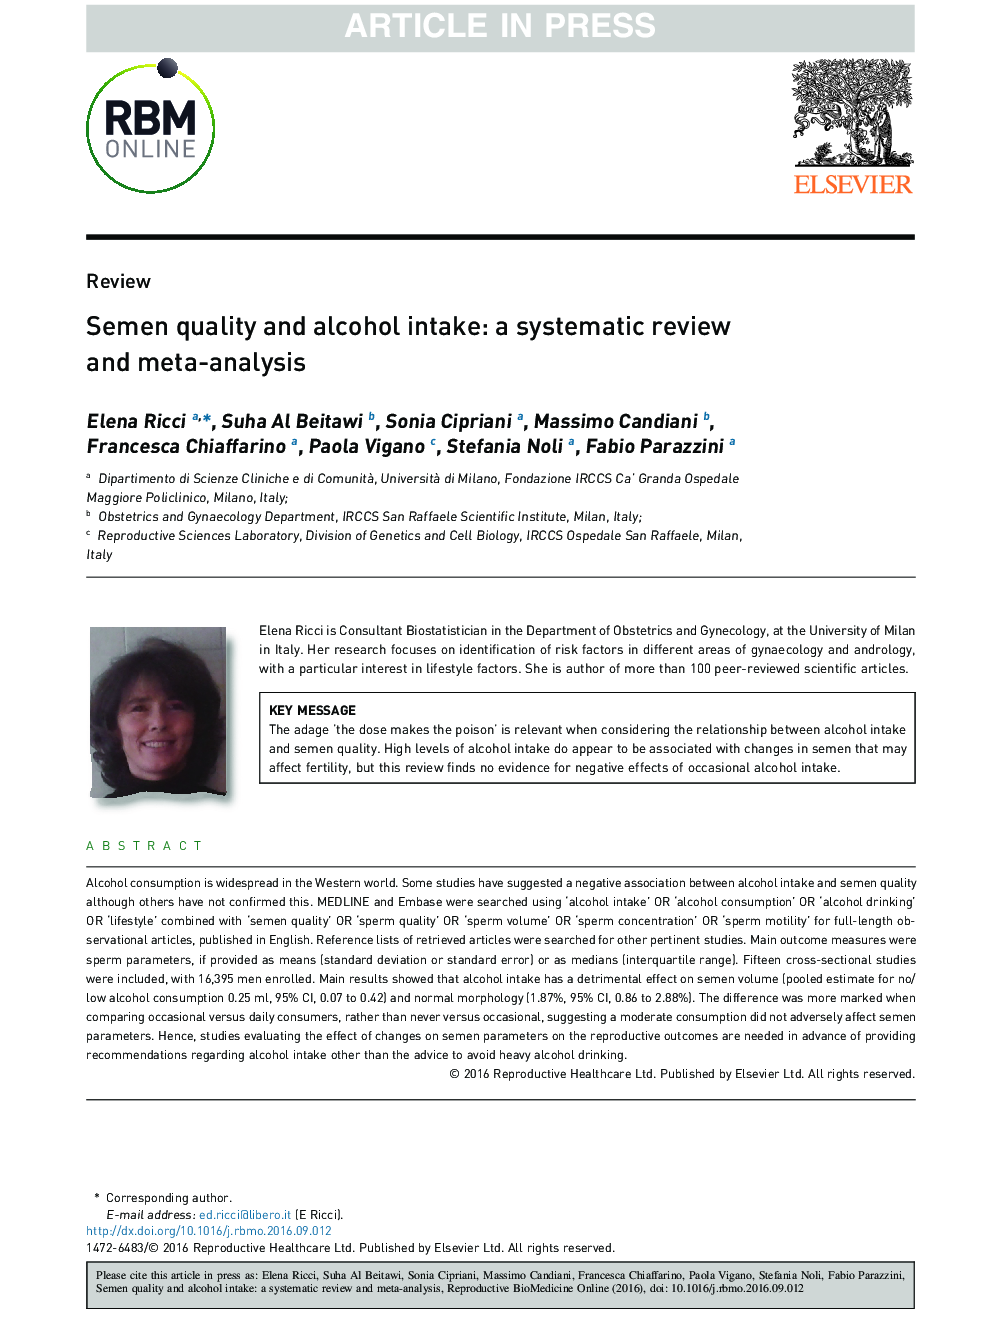 کیفیت کپسول و مصرف الکل: بررسی منظم و متا آنالیز 